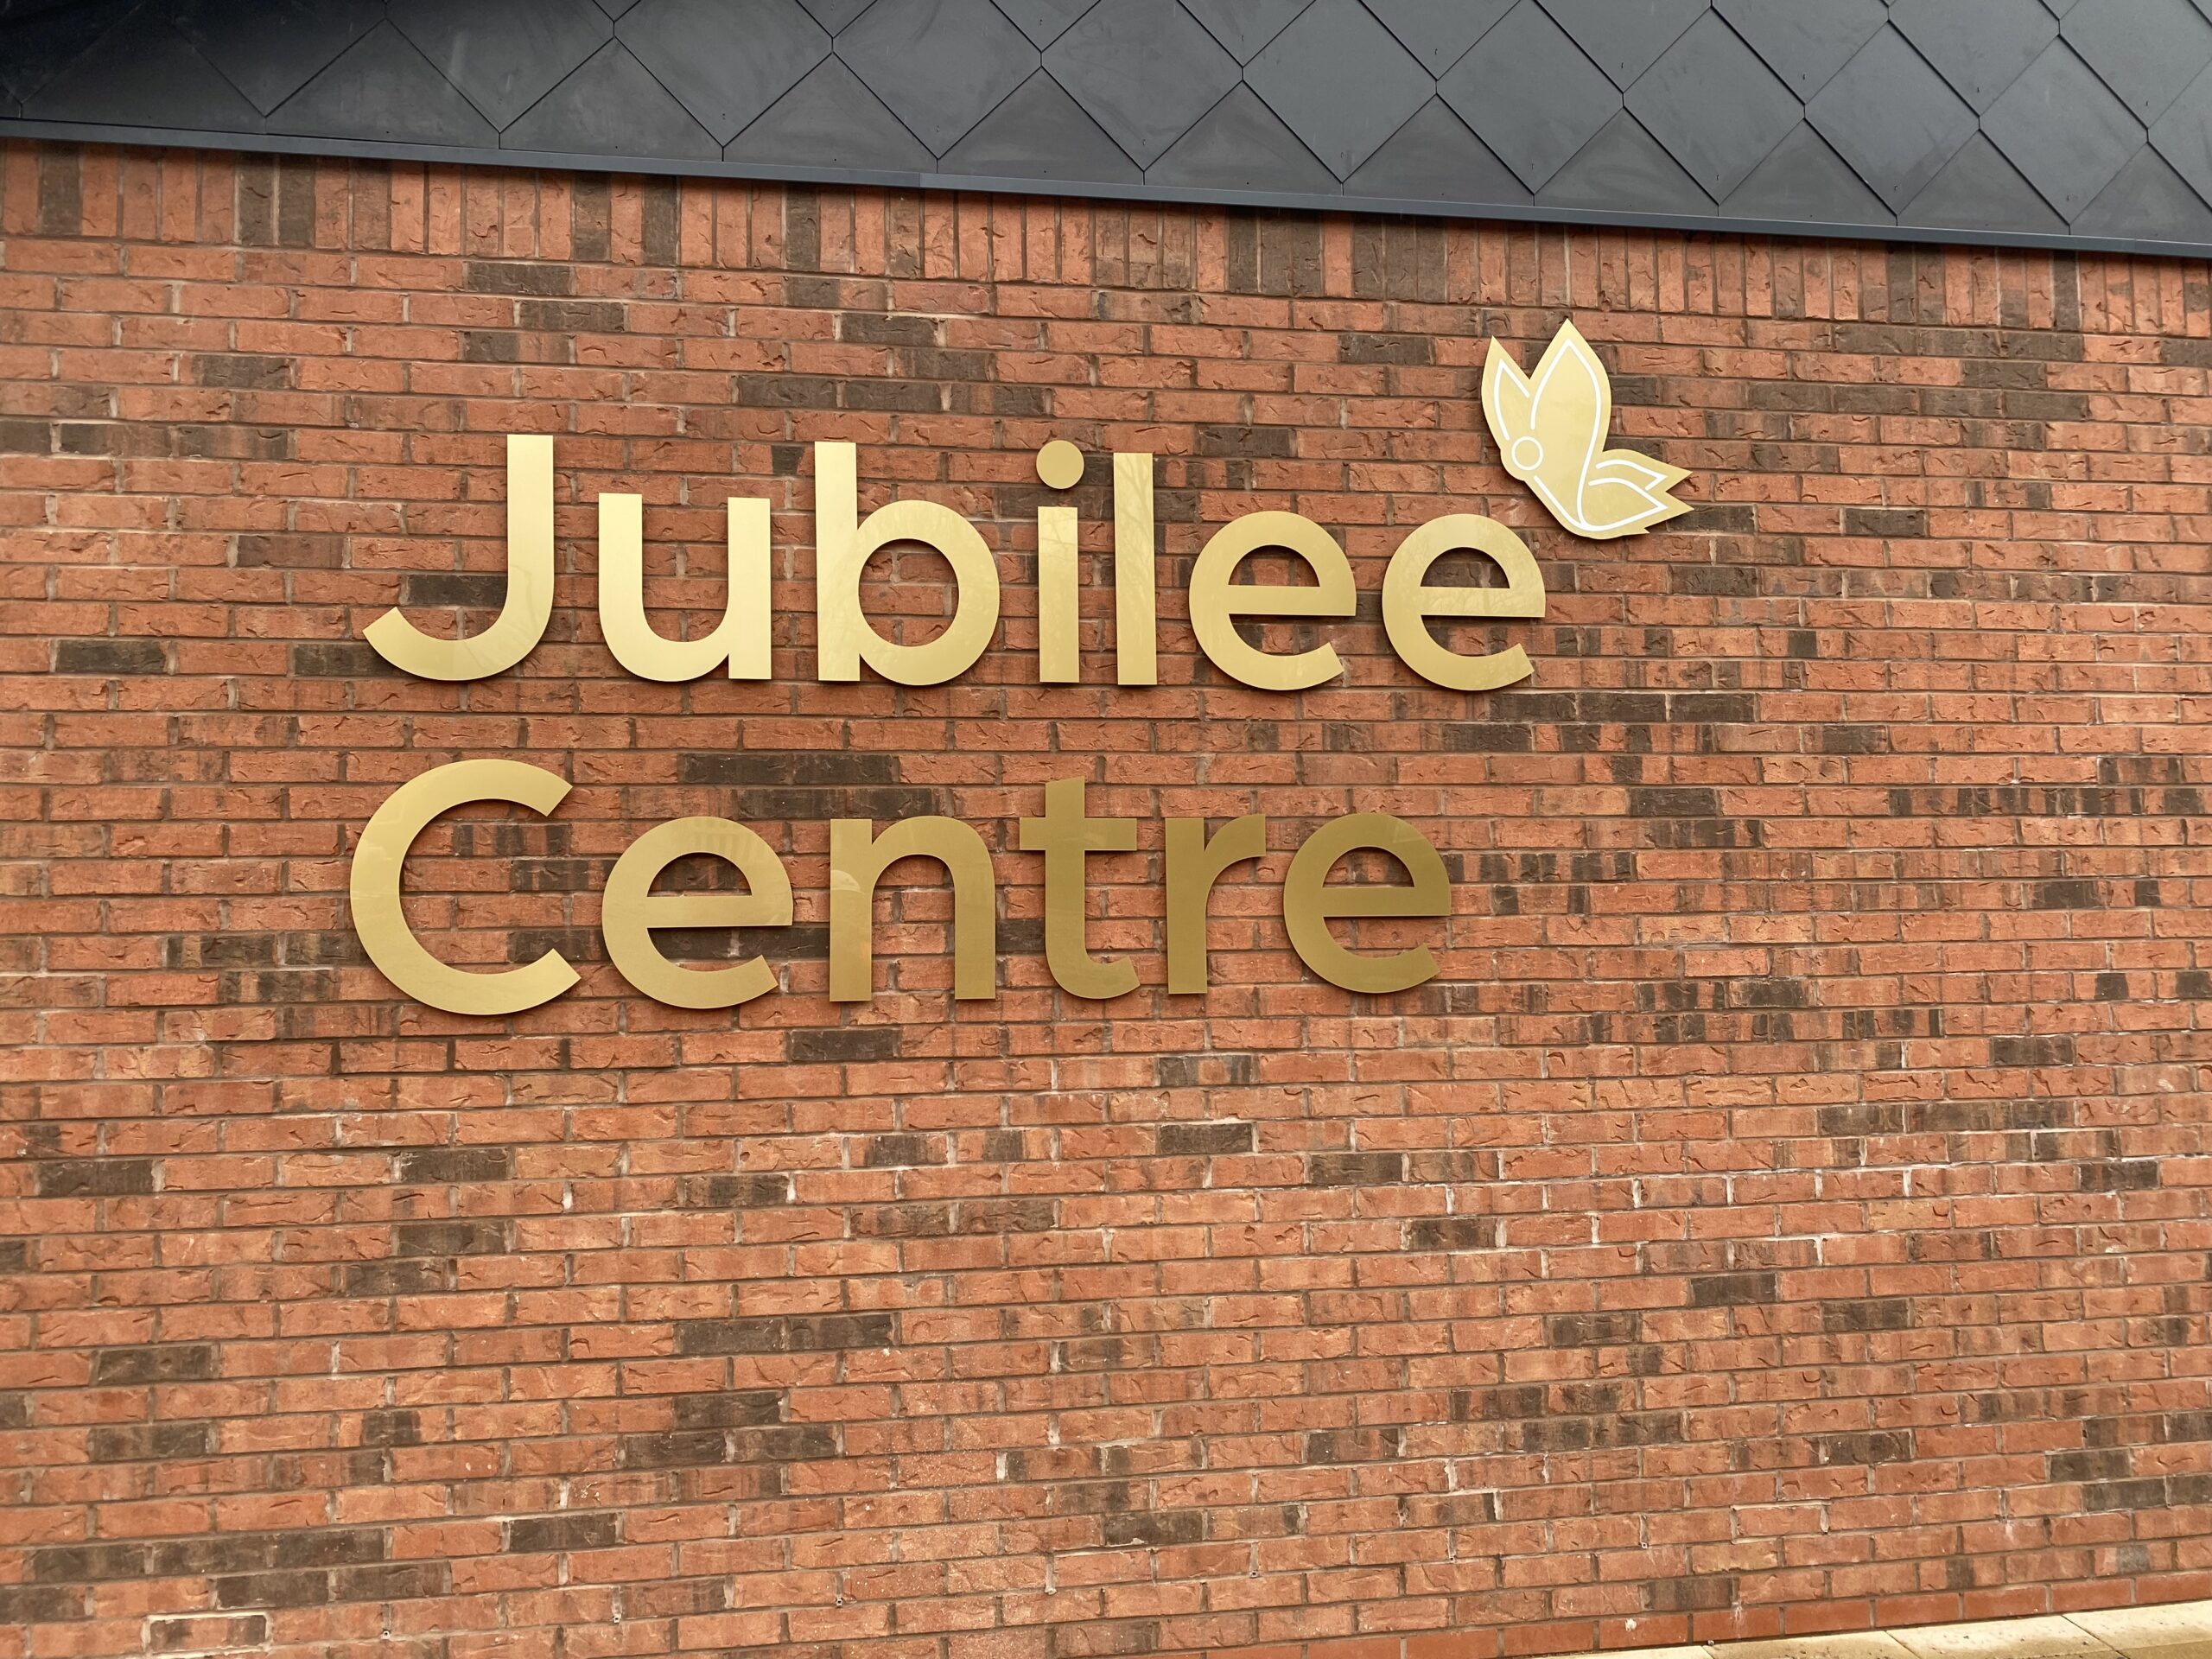 Jubilee Centre